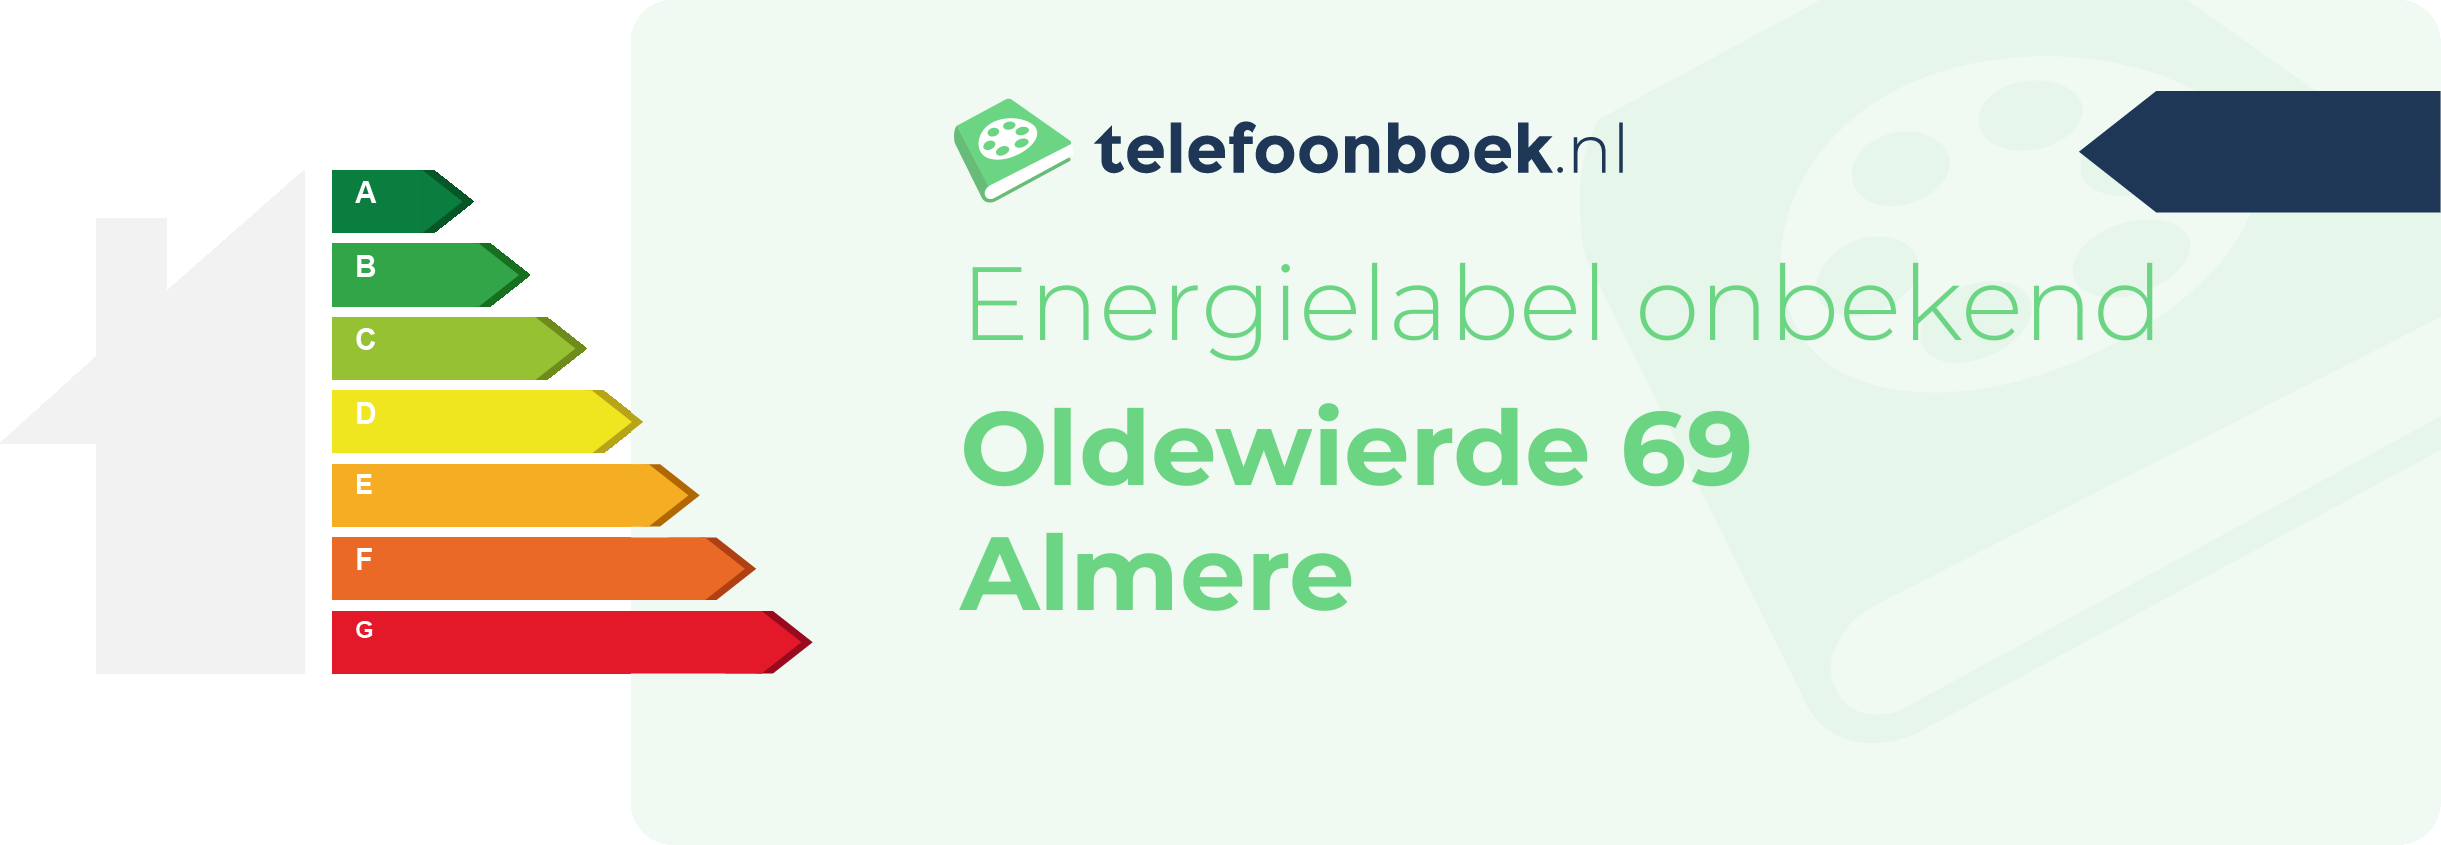 Energielabel Oldewierde 69 Almere